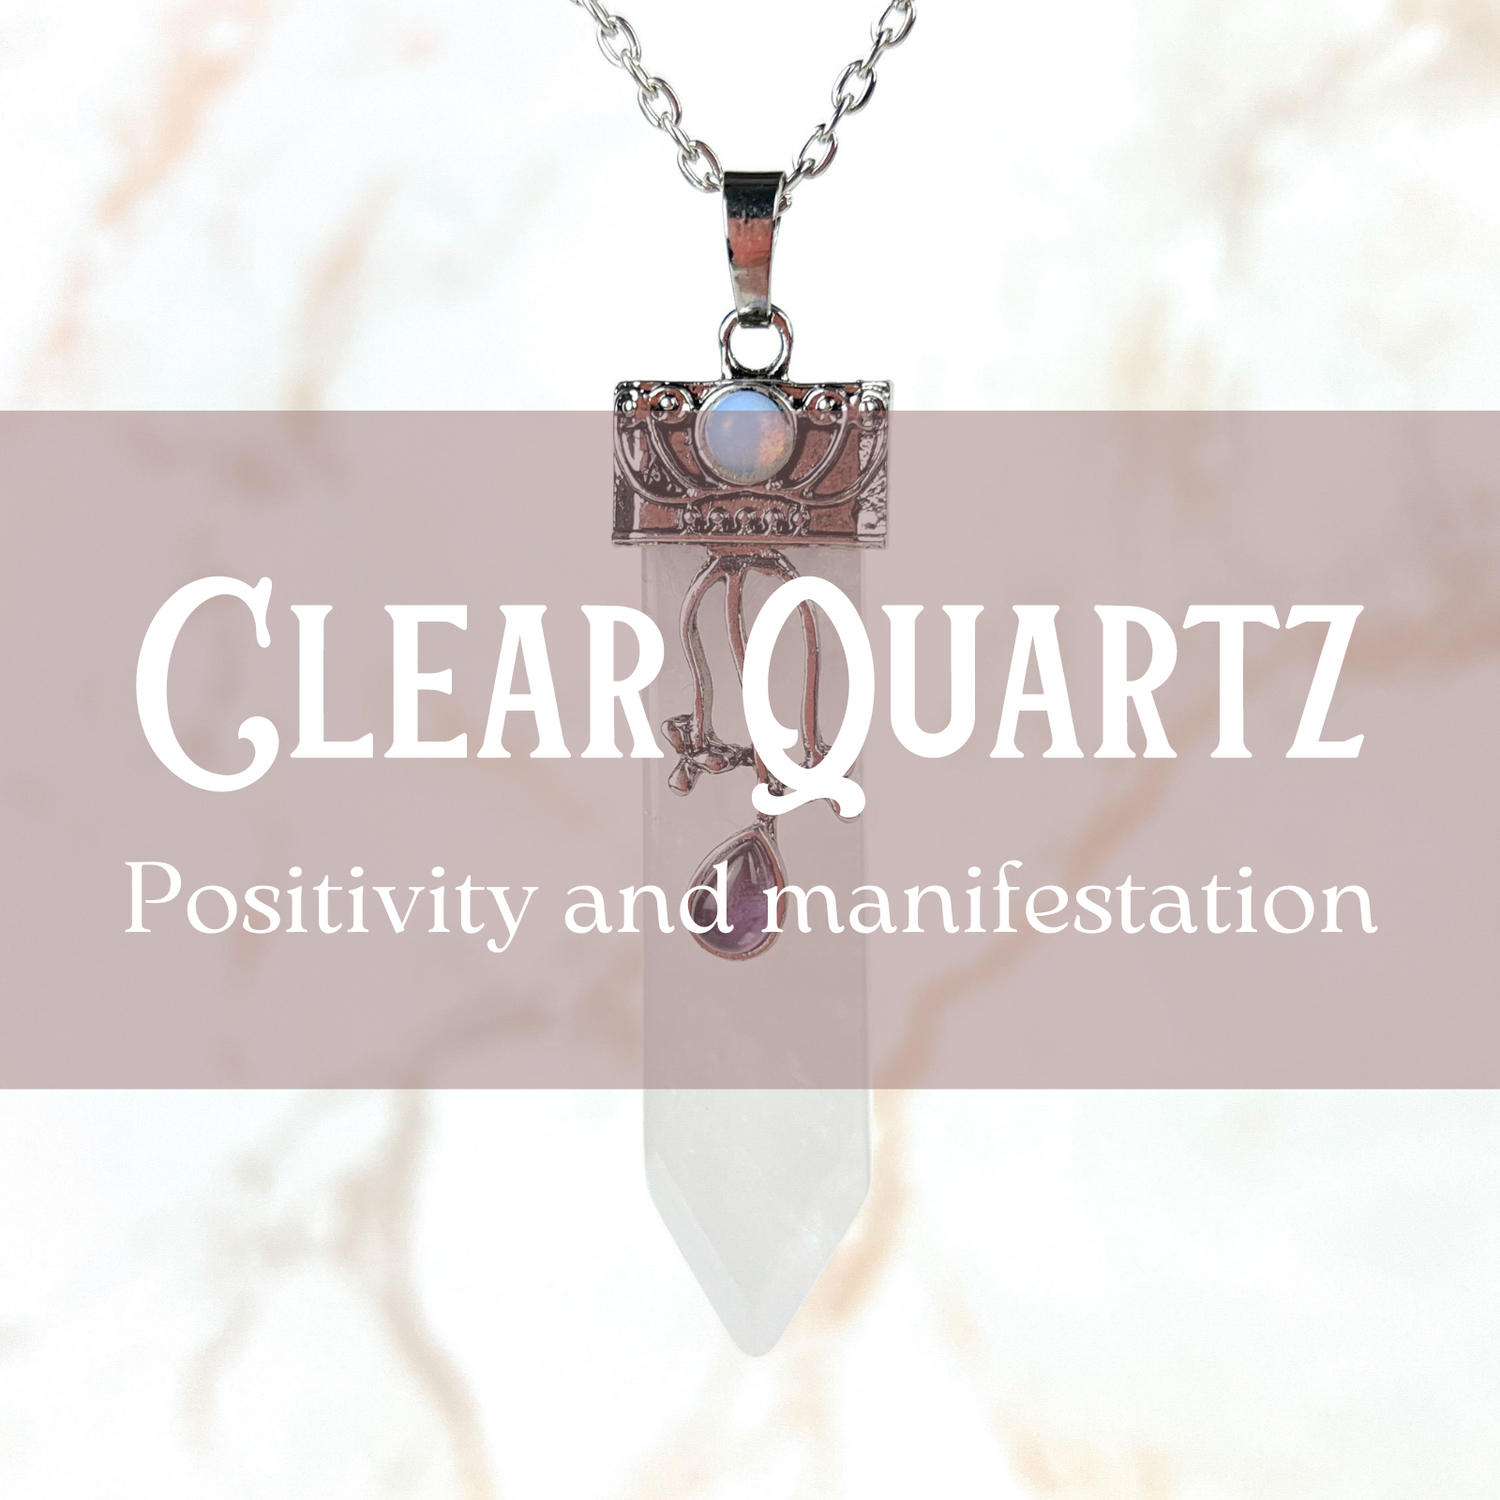 Clear Quartz jewelry